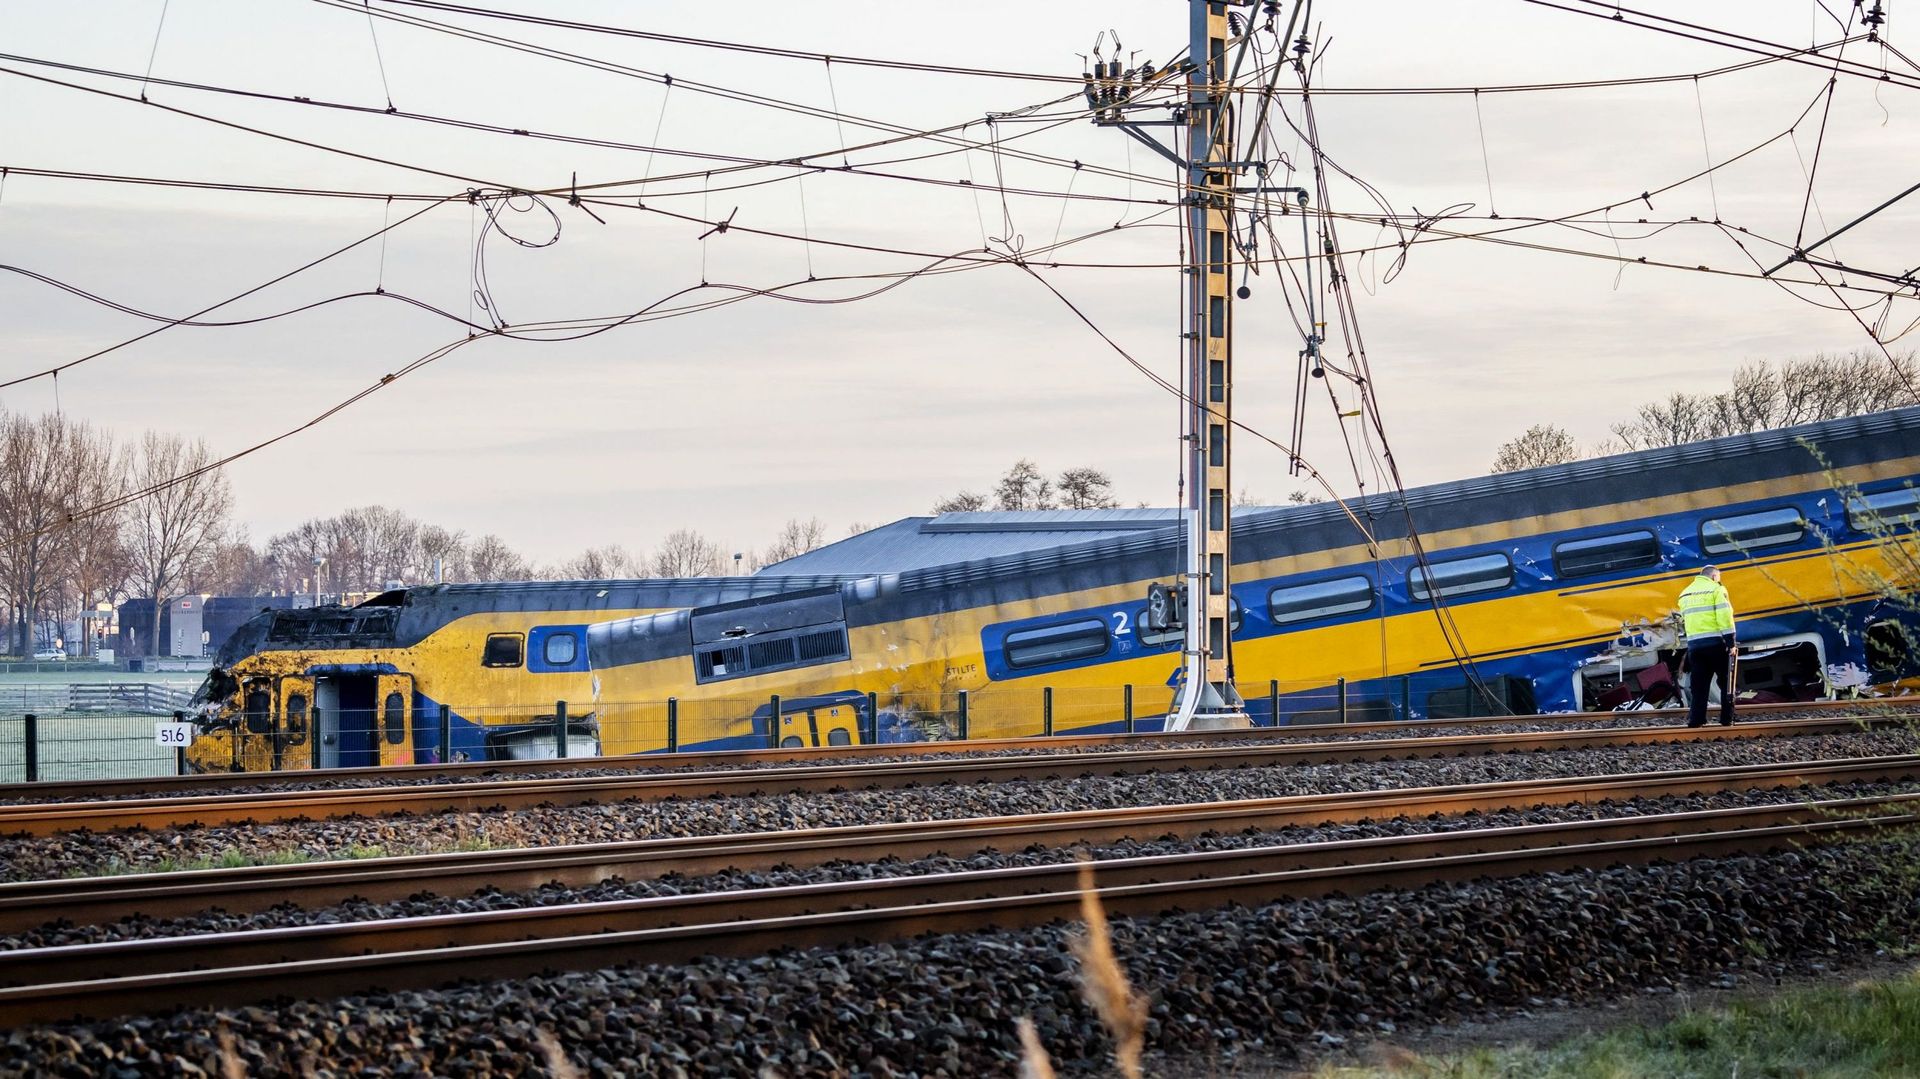 Les services d'urgence travaillent sur le site d'un train déraillé à Voorschoten ce 4 avril 2023. Le train de voyageurs est entré en collision avec des engins de chantier sur la voie. 